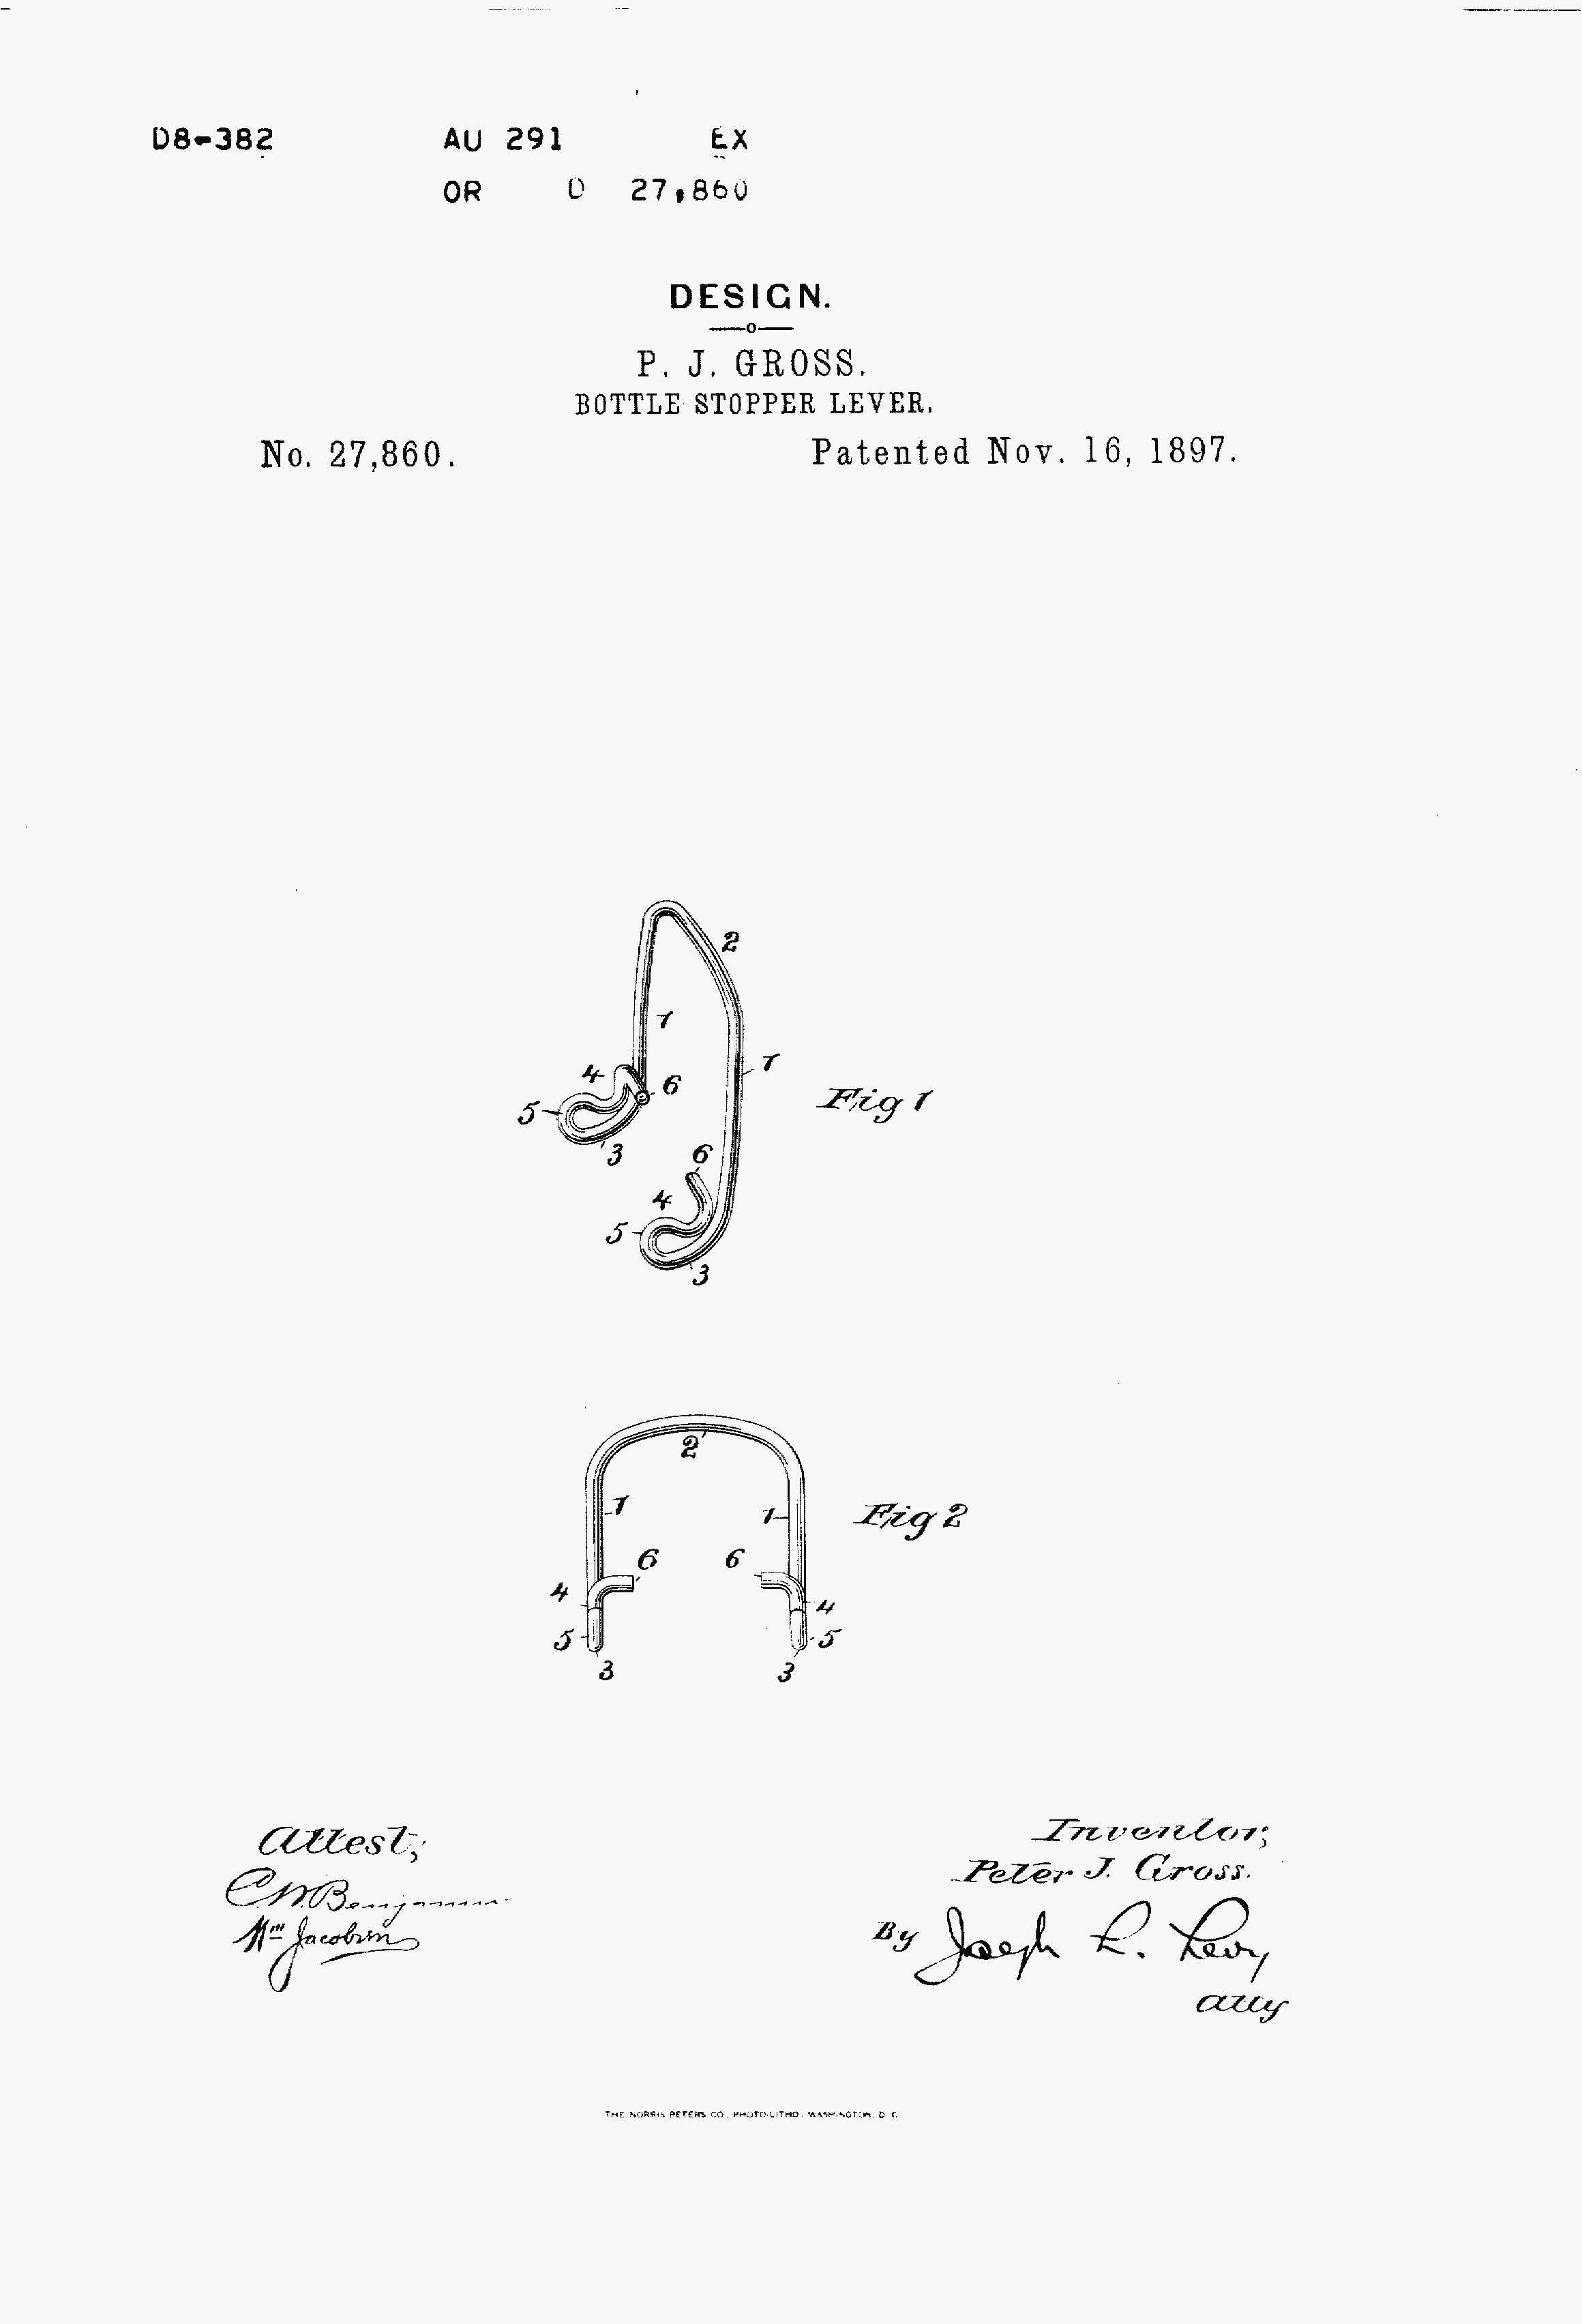 Design Patent 27,860